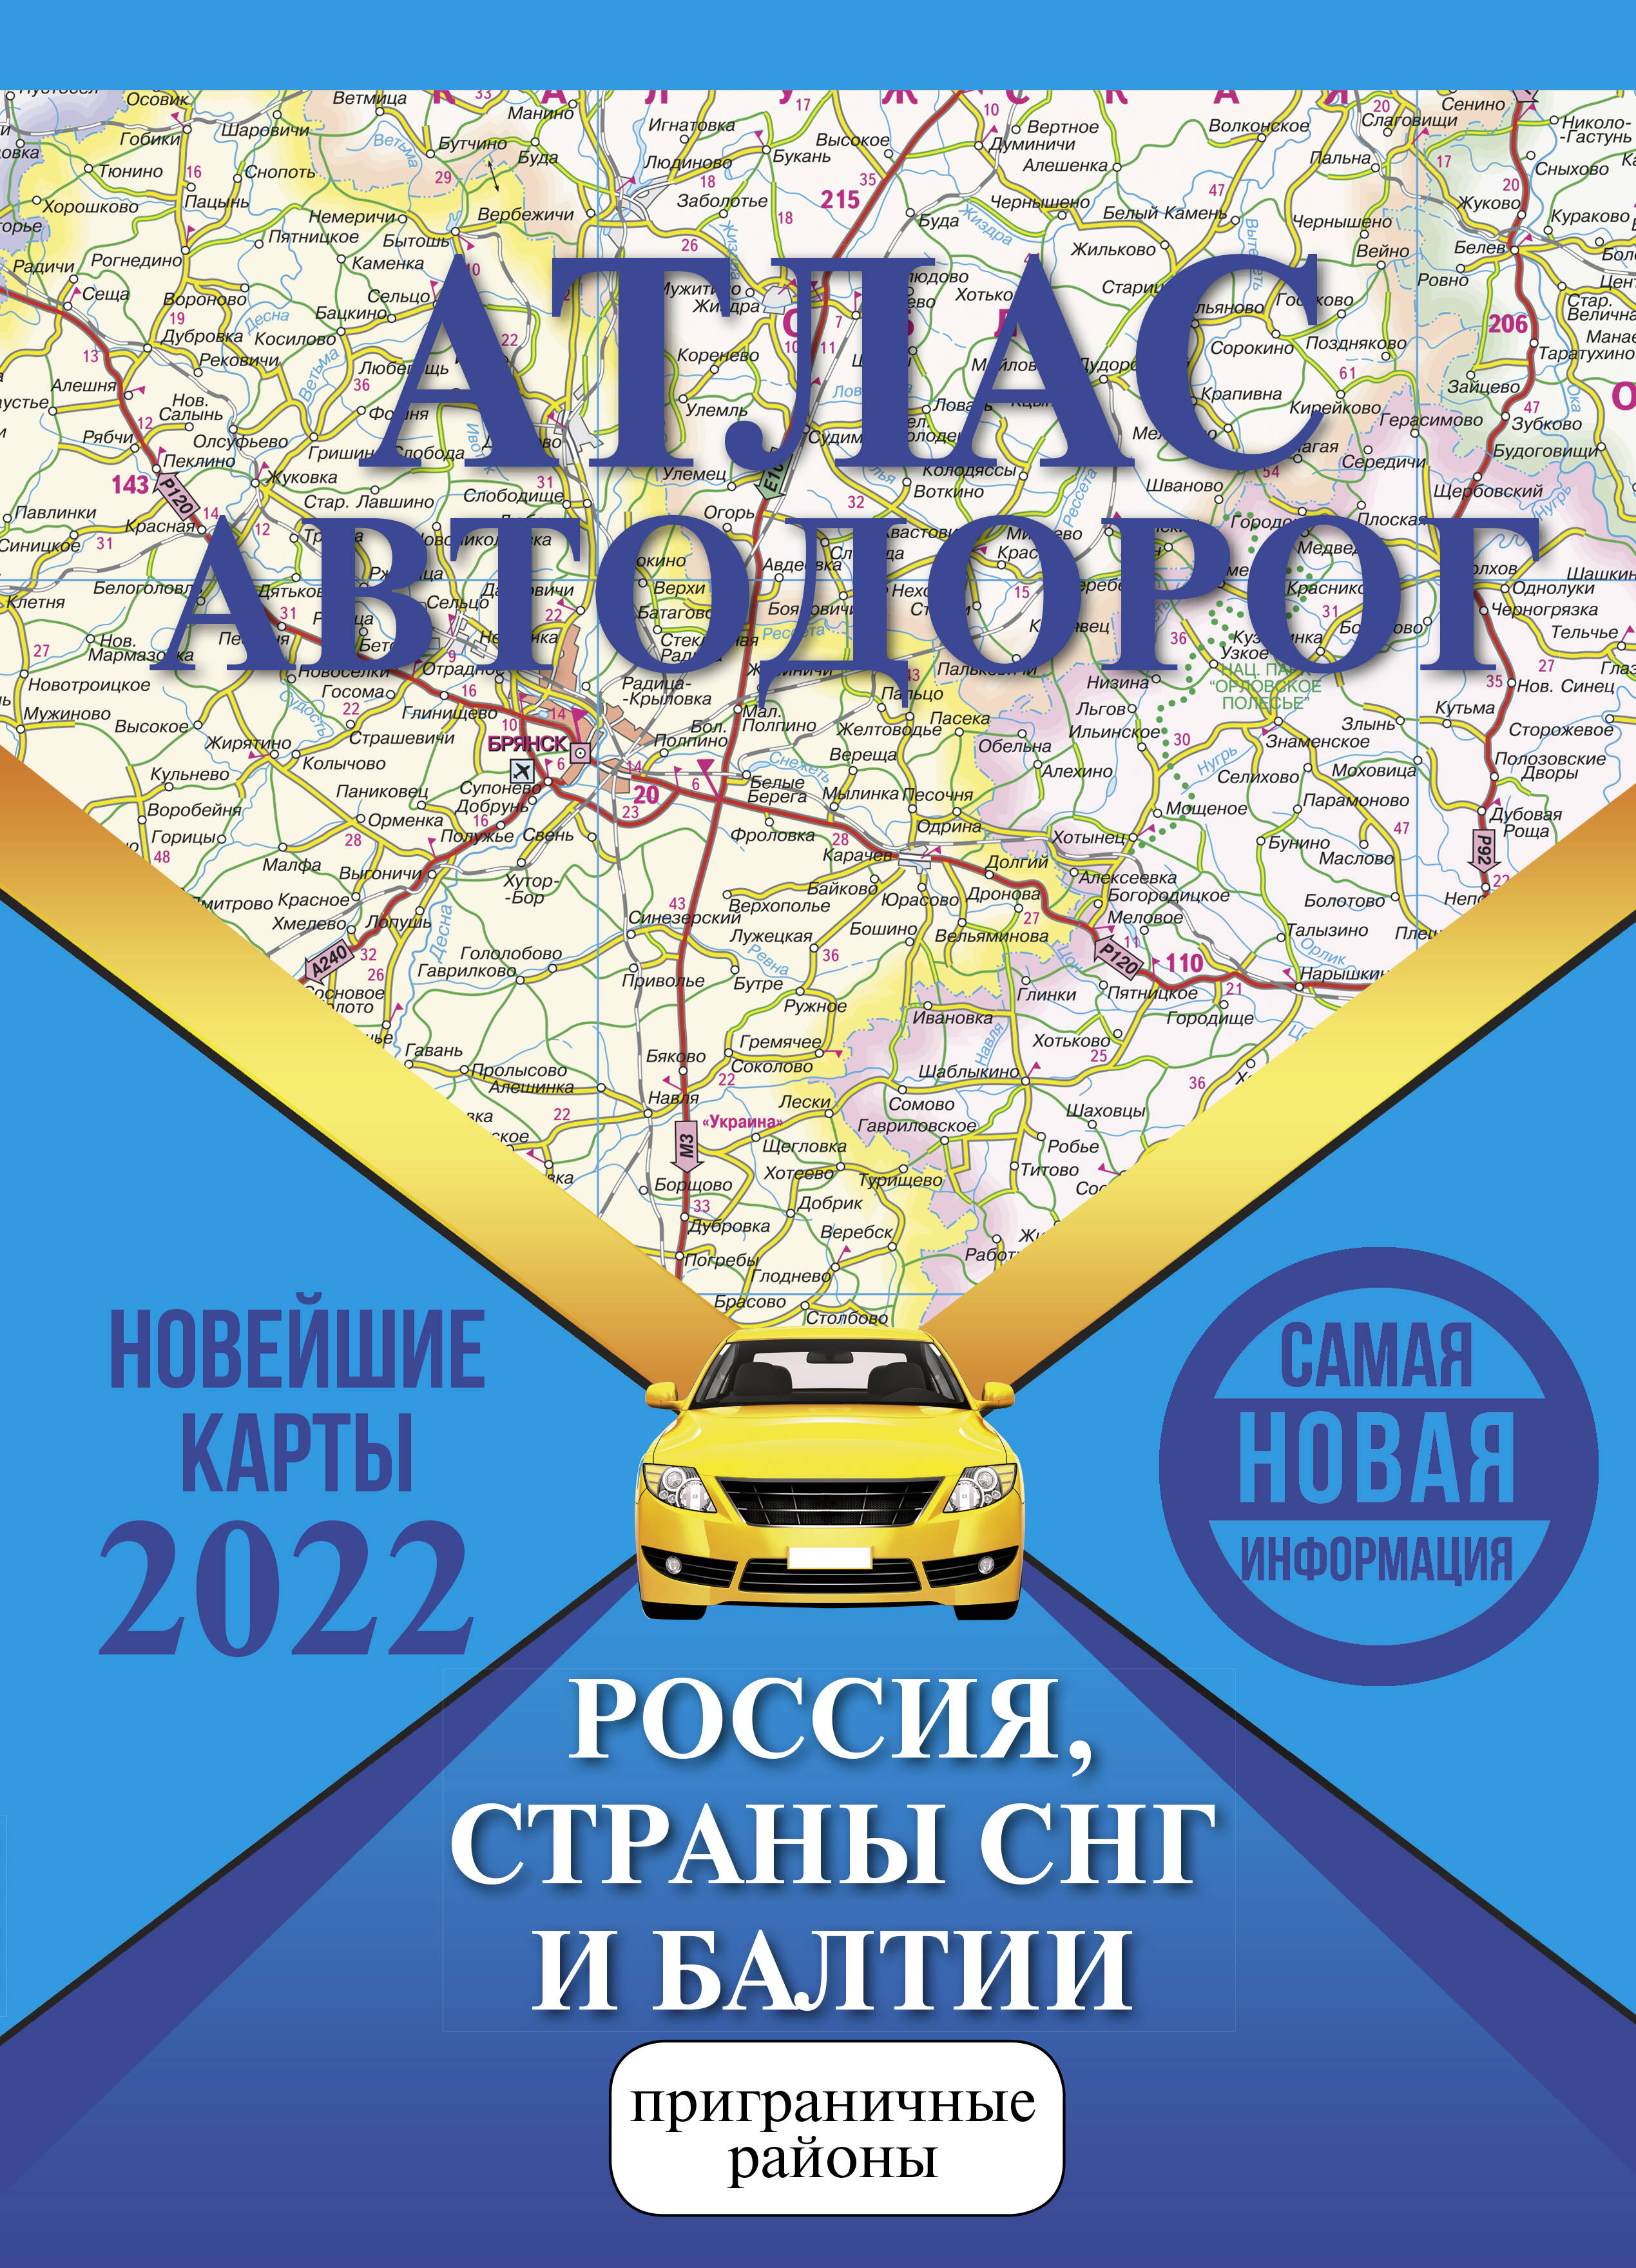  Атлас автодорог России, стран СНГ и Балтии (приграничные районы) - страница 0